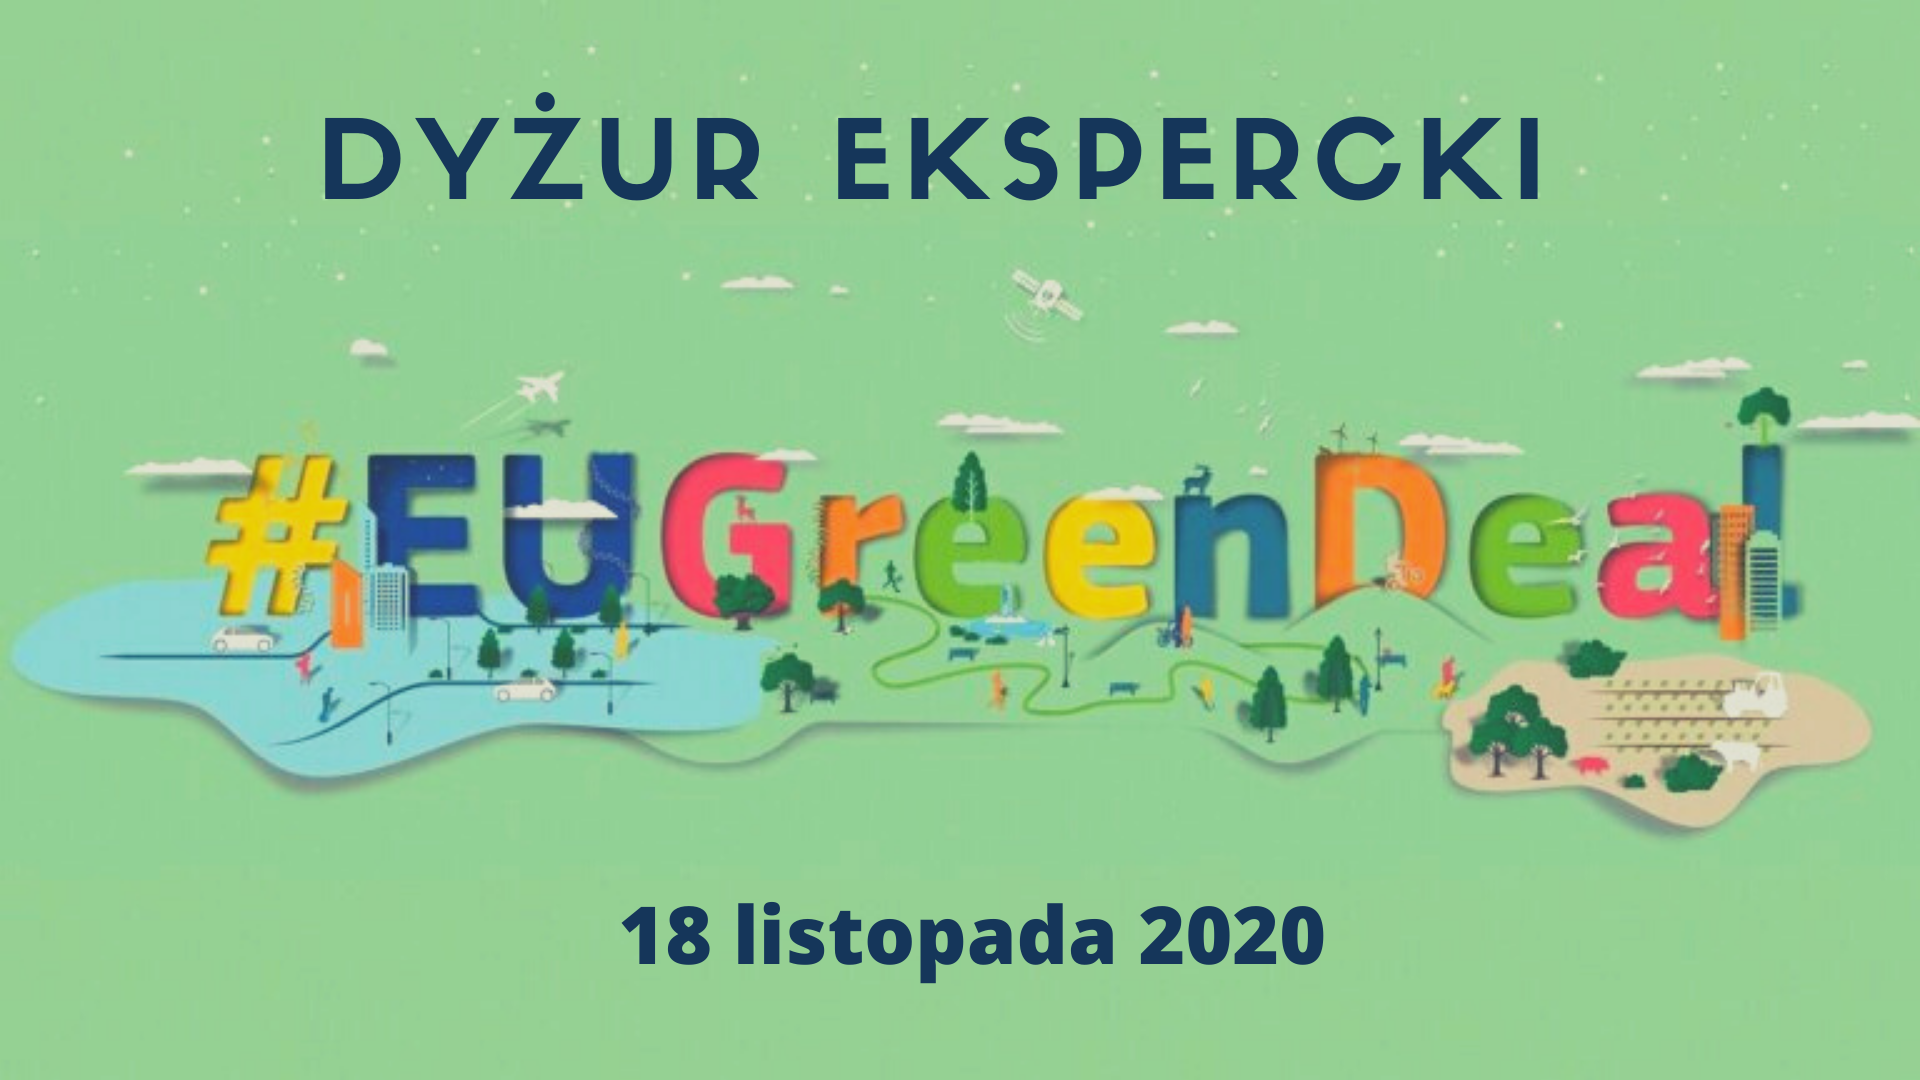 Dyżur Ekspercki #eugreendeal 18 listopada 2020